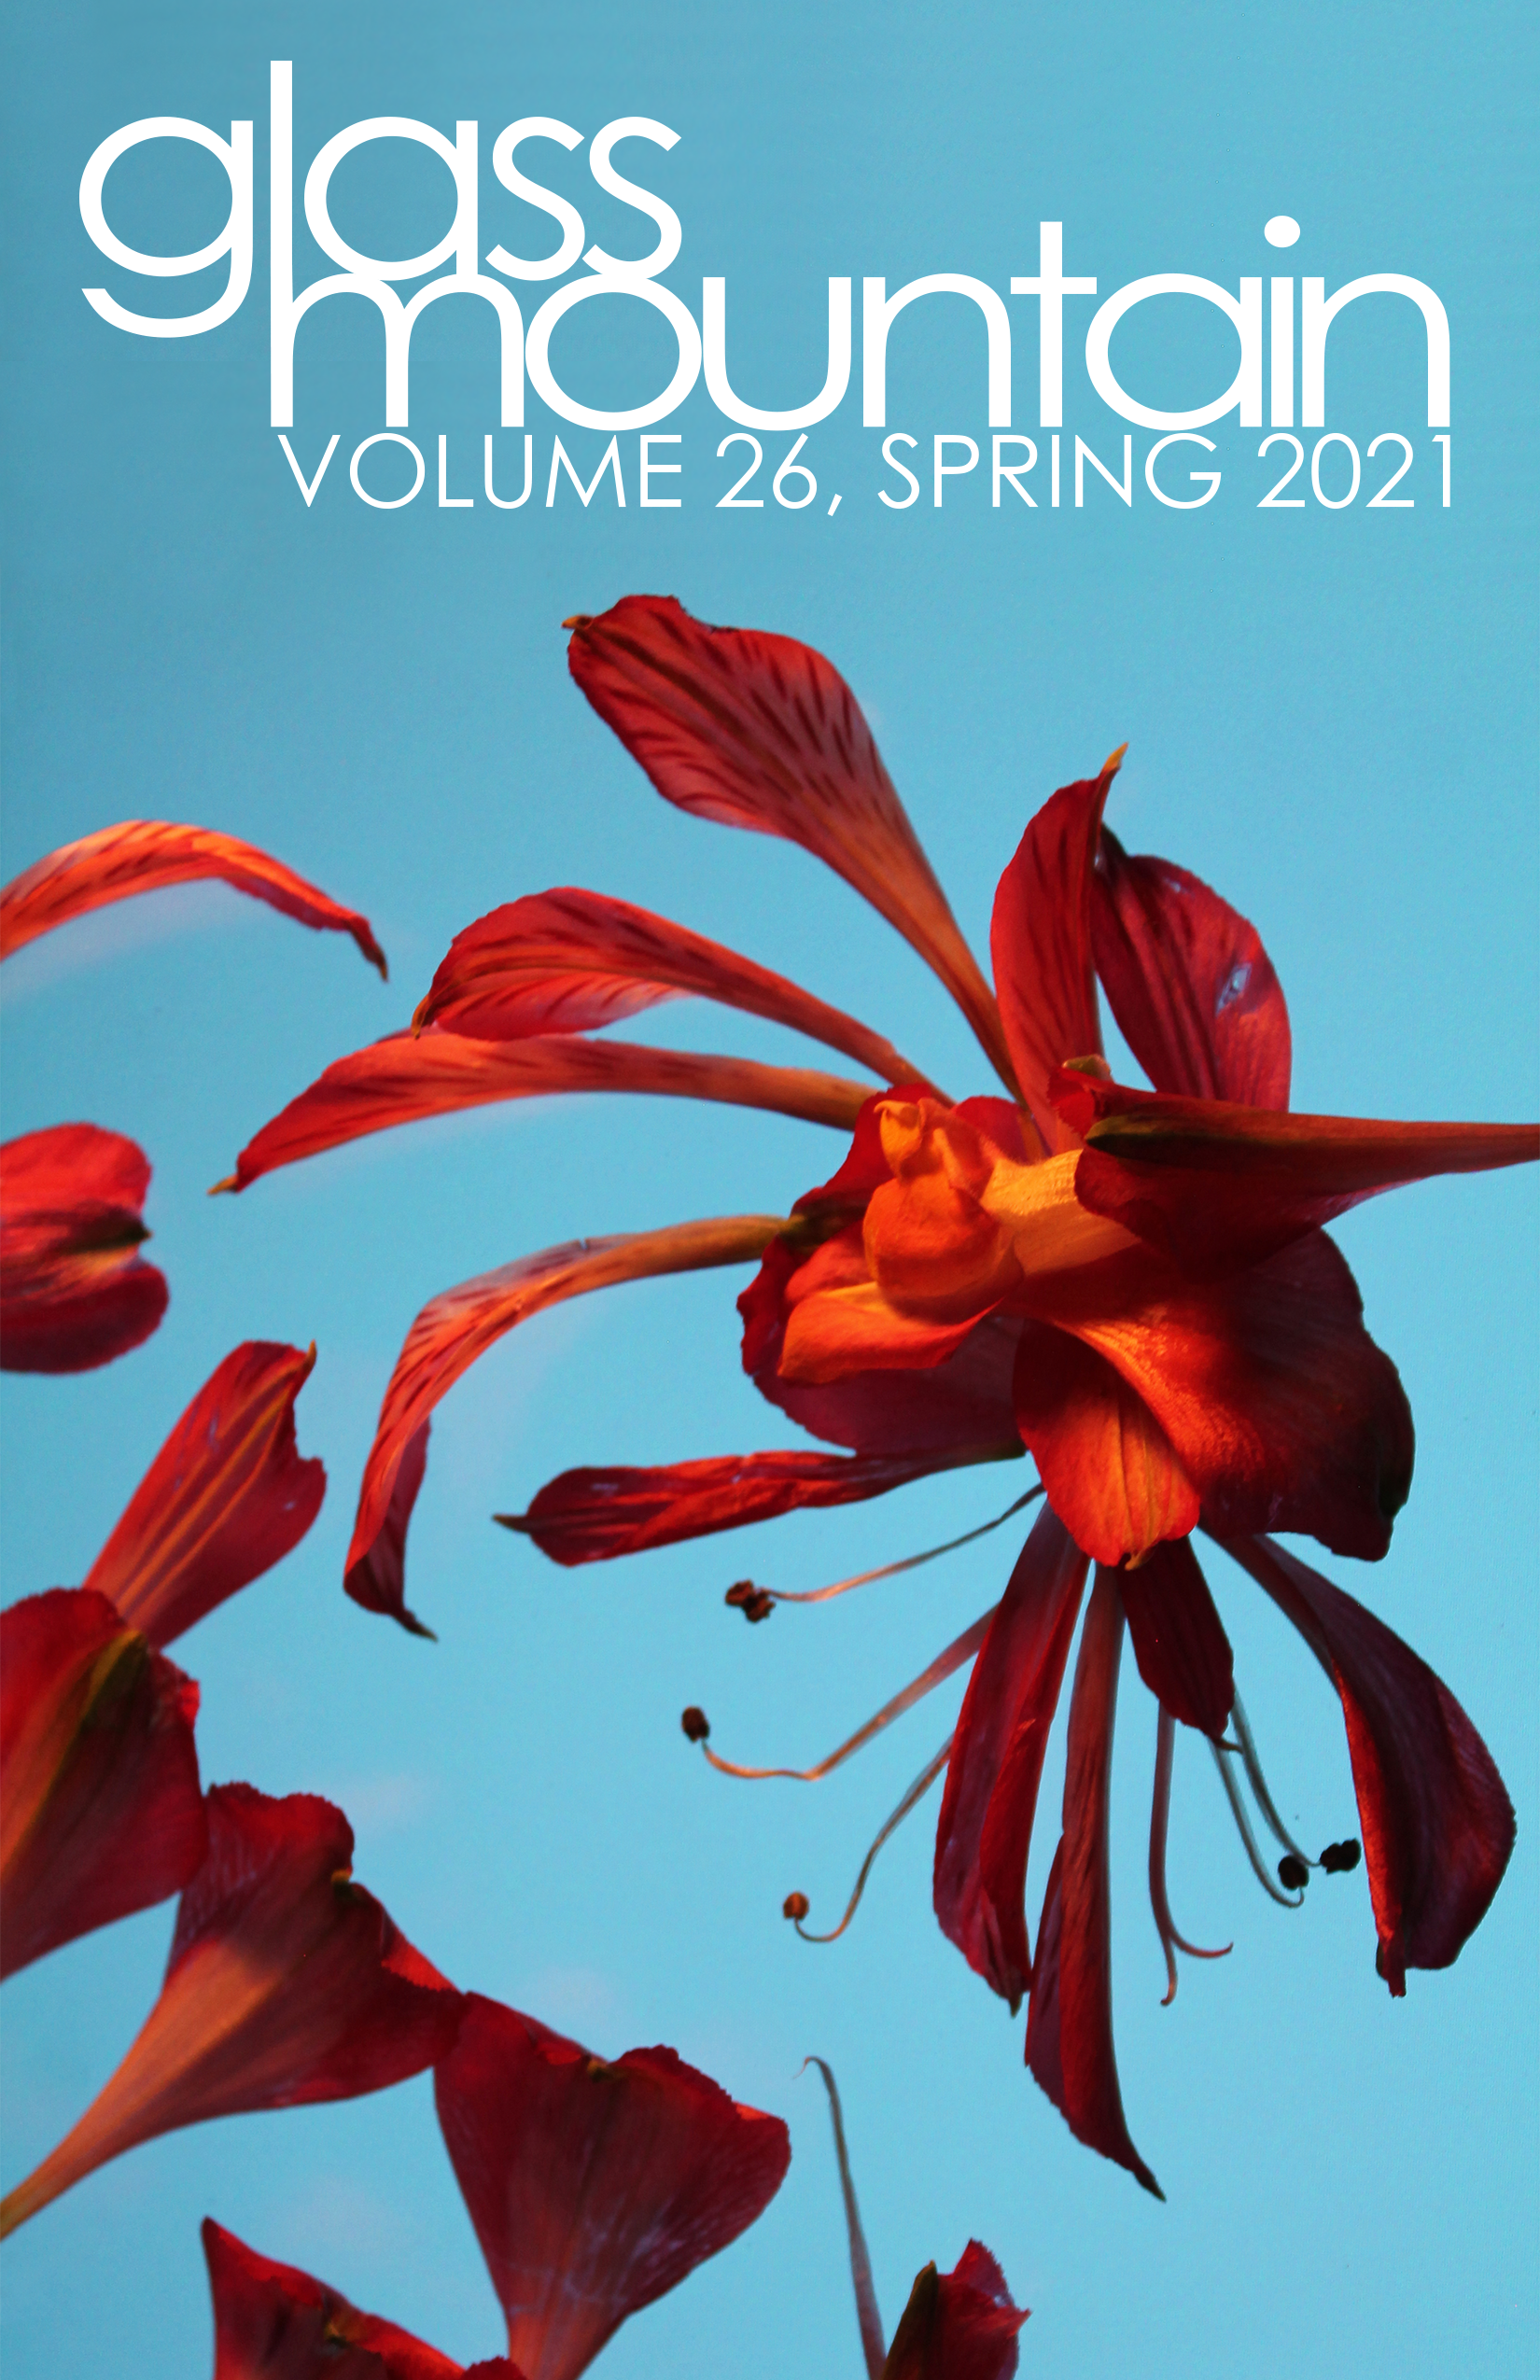 Glass Mountain: Volume 26, Spring 2021